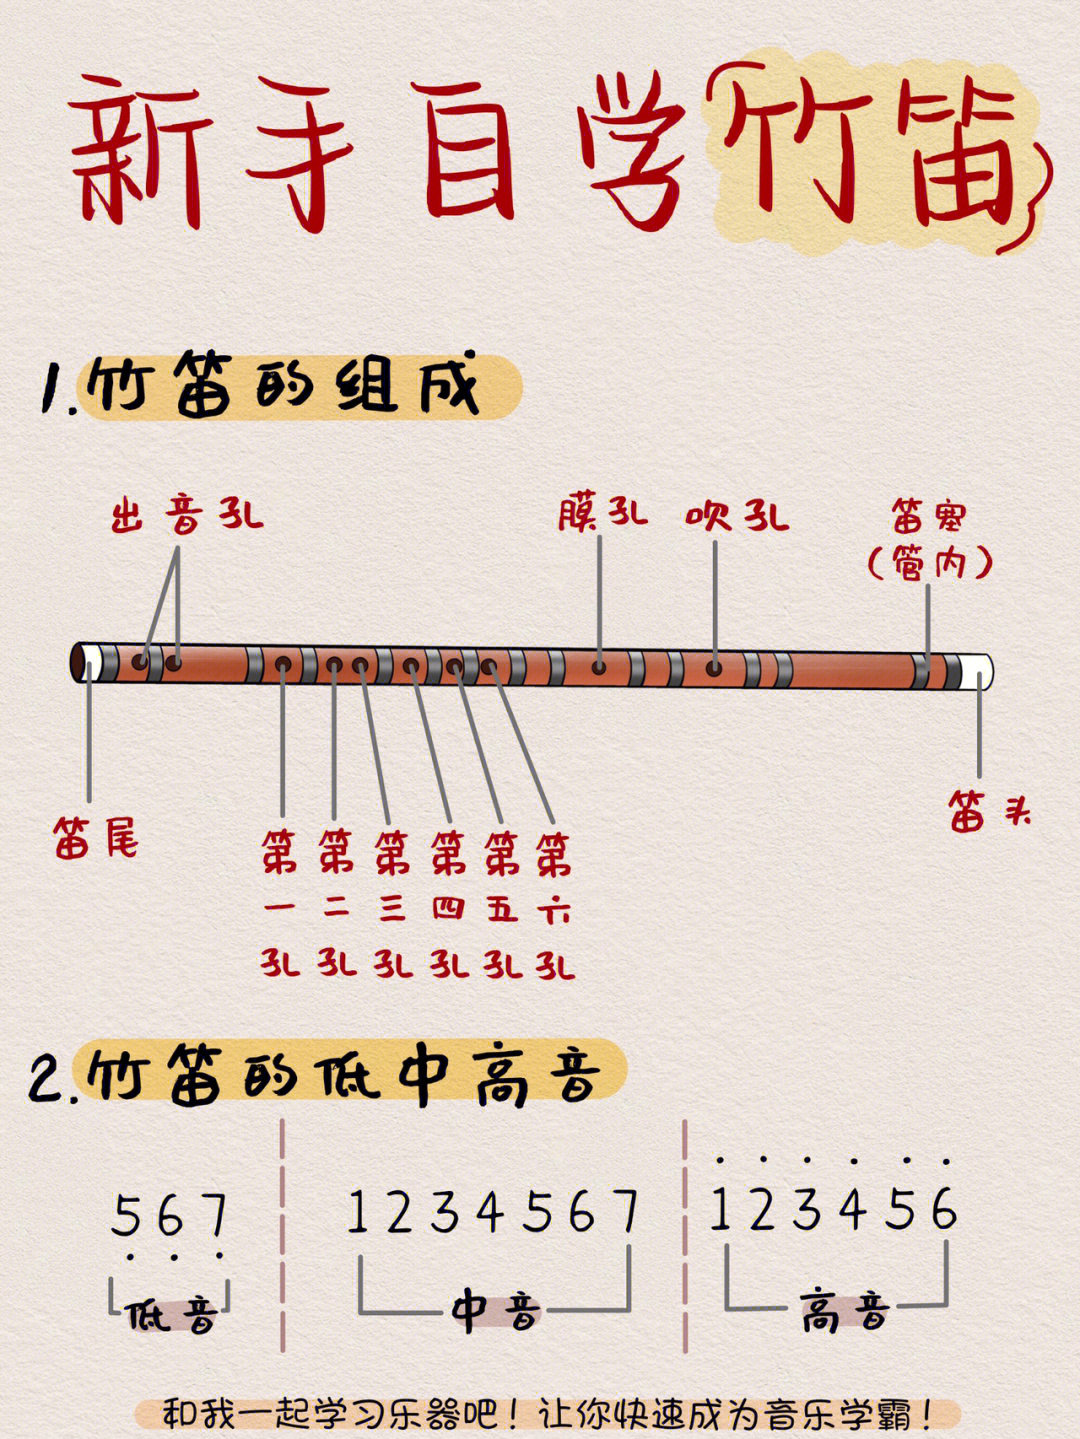 笛子5指法表图片